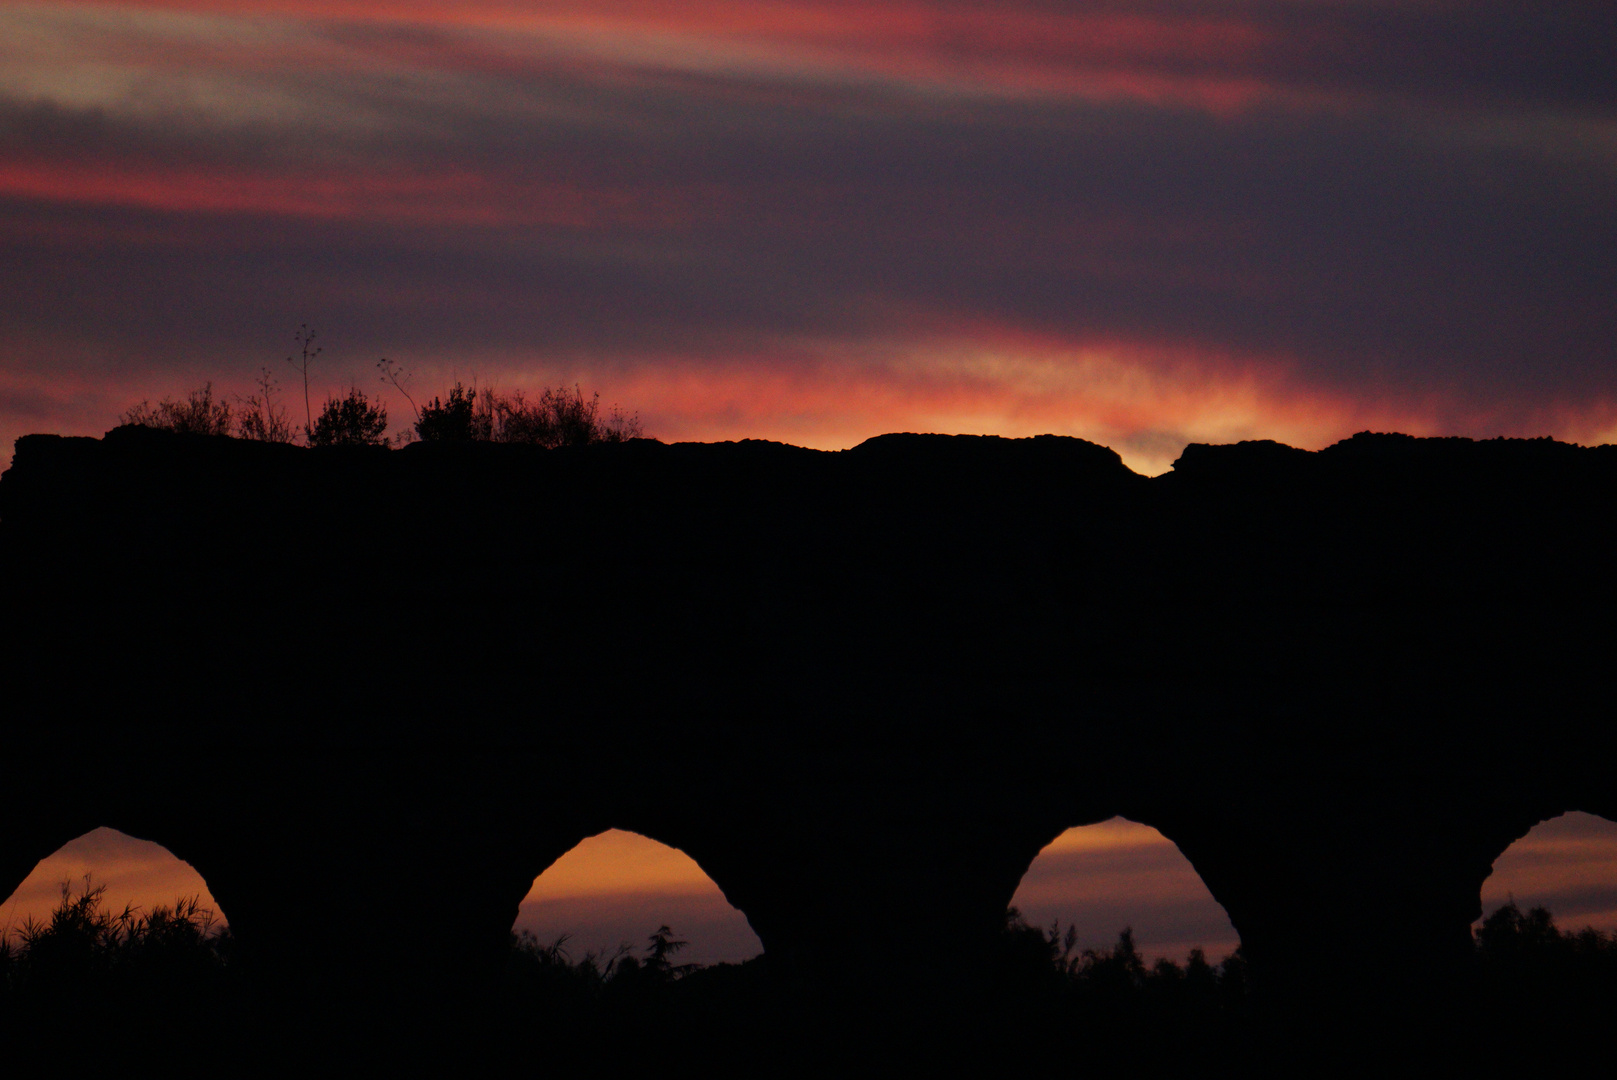 Aqueduct in sunset